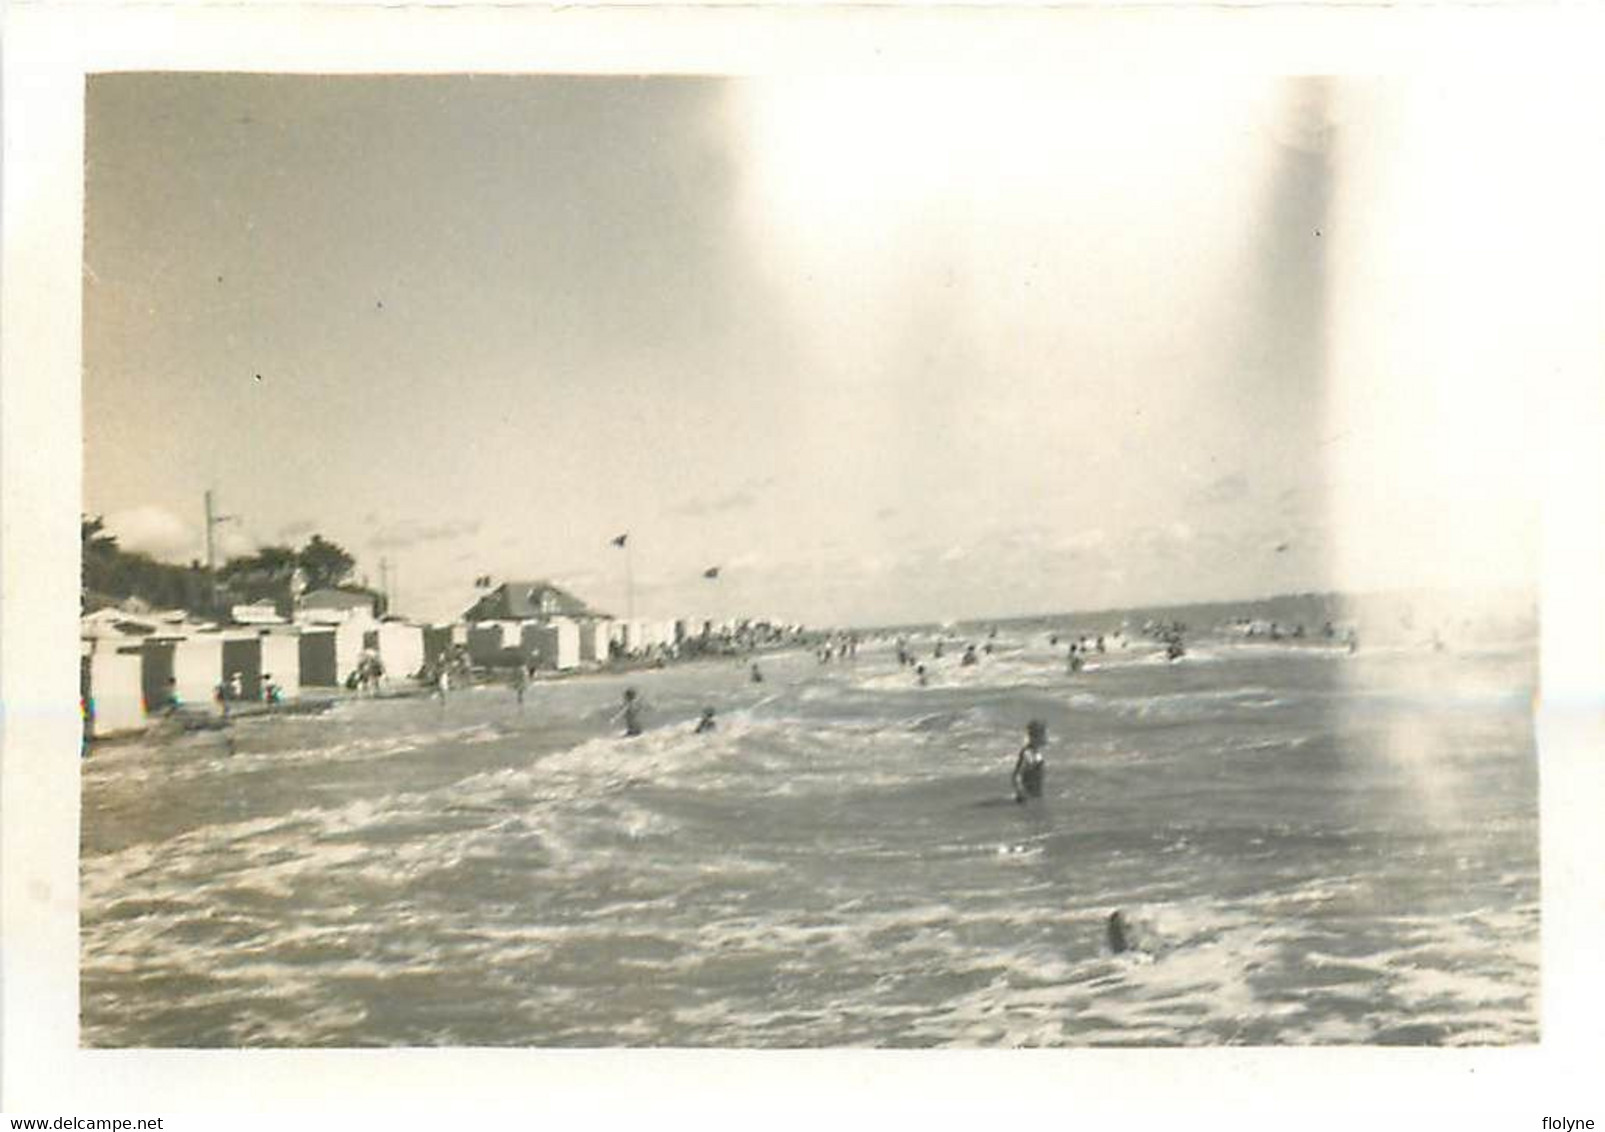 la bernerie en retz - 28 photos anciennes - vue sur la côte , la plage , jeux de plage , jetée , cabines de bains ...